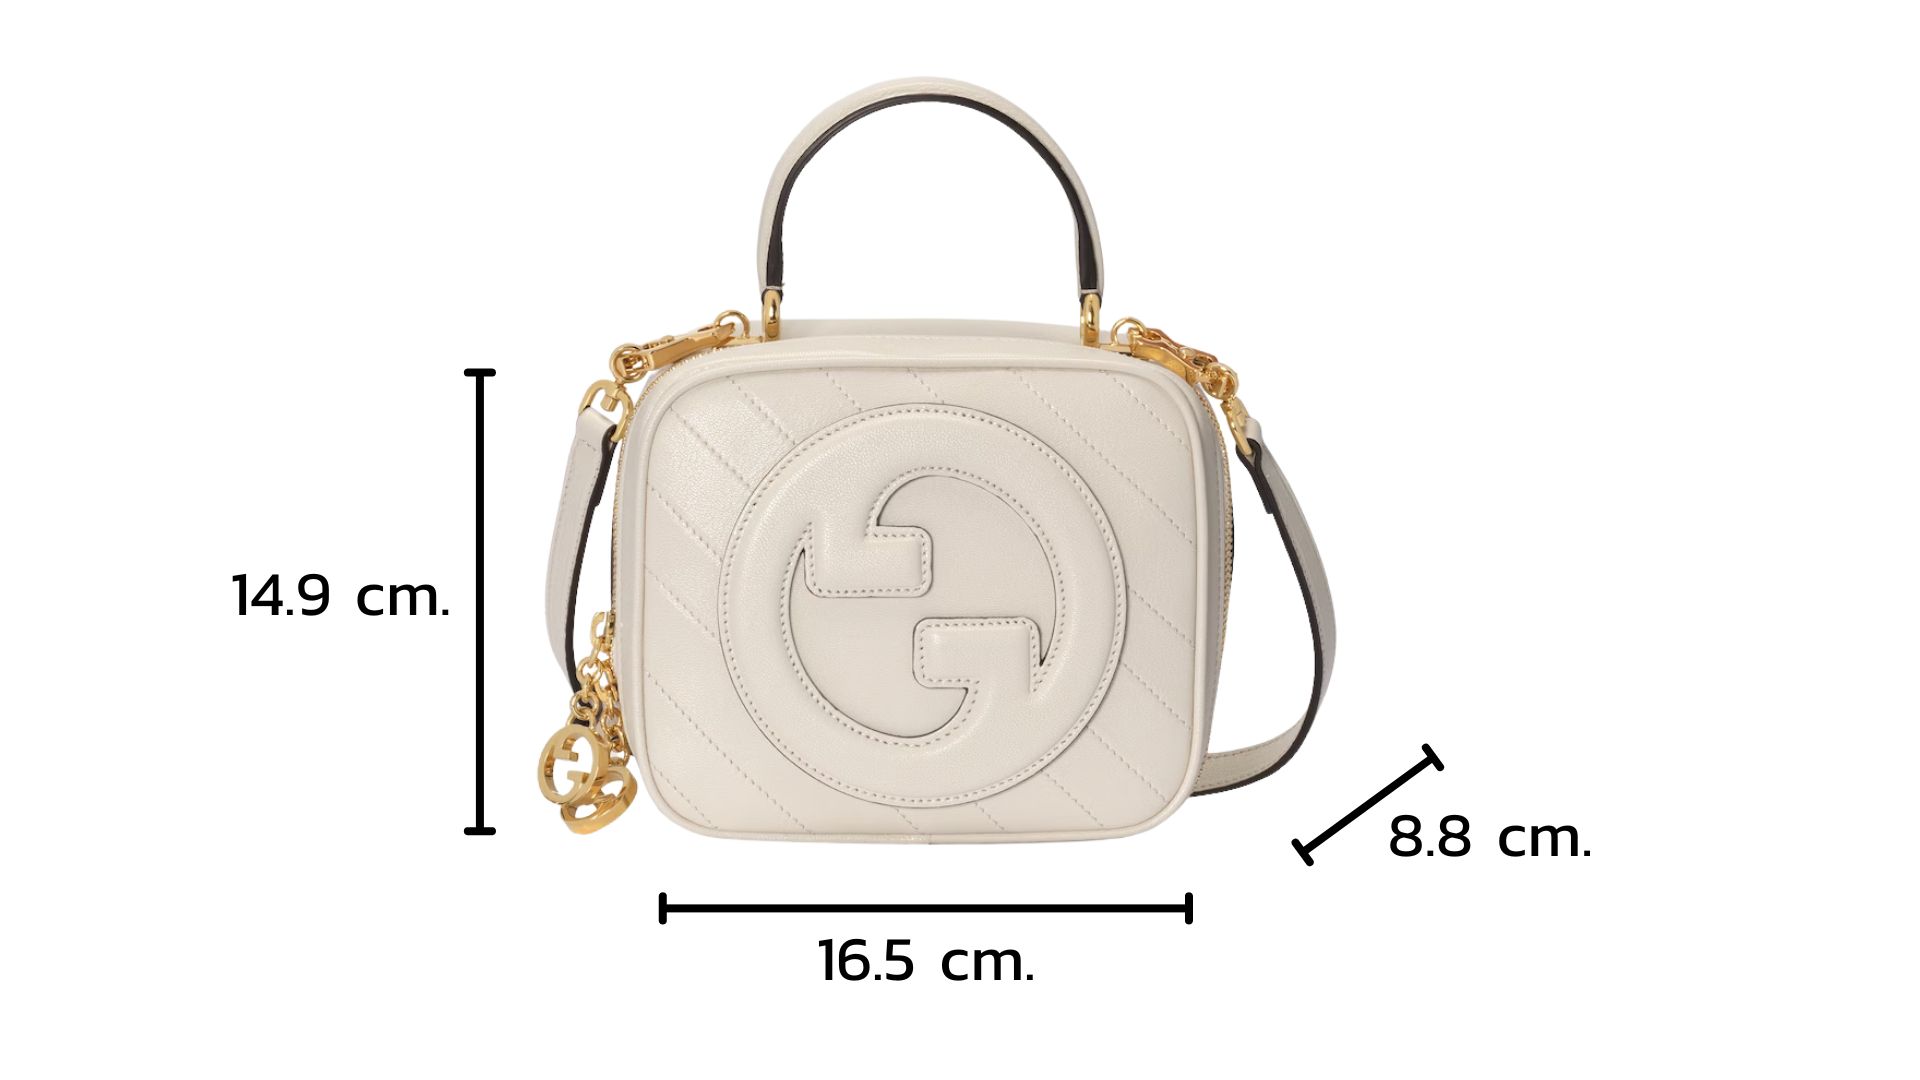 Anatomy of Gucci Blondie Top Handle Bag ขนาดของกระเป๋า